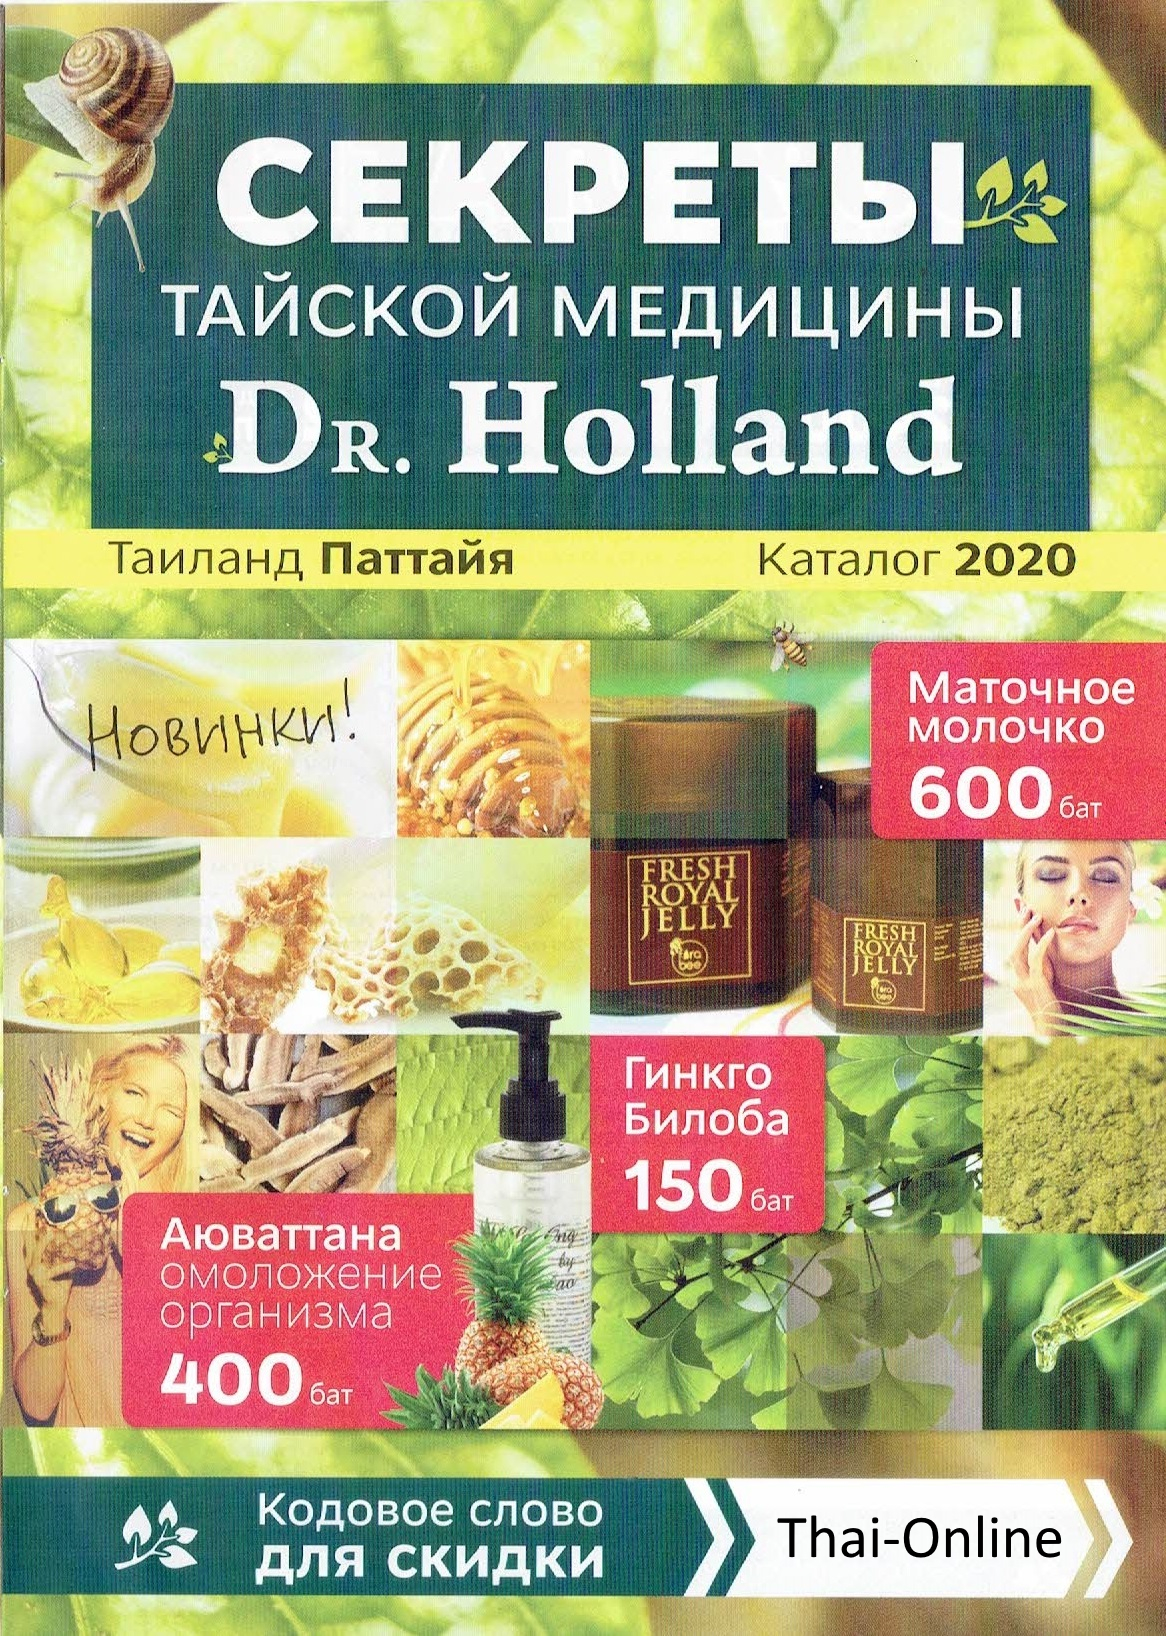 Doctor Holland аптека тайской медицины в Паттайе Таиланде каталог страница 1